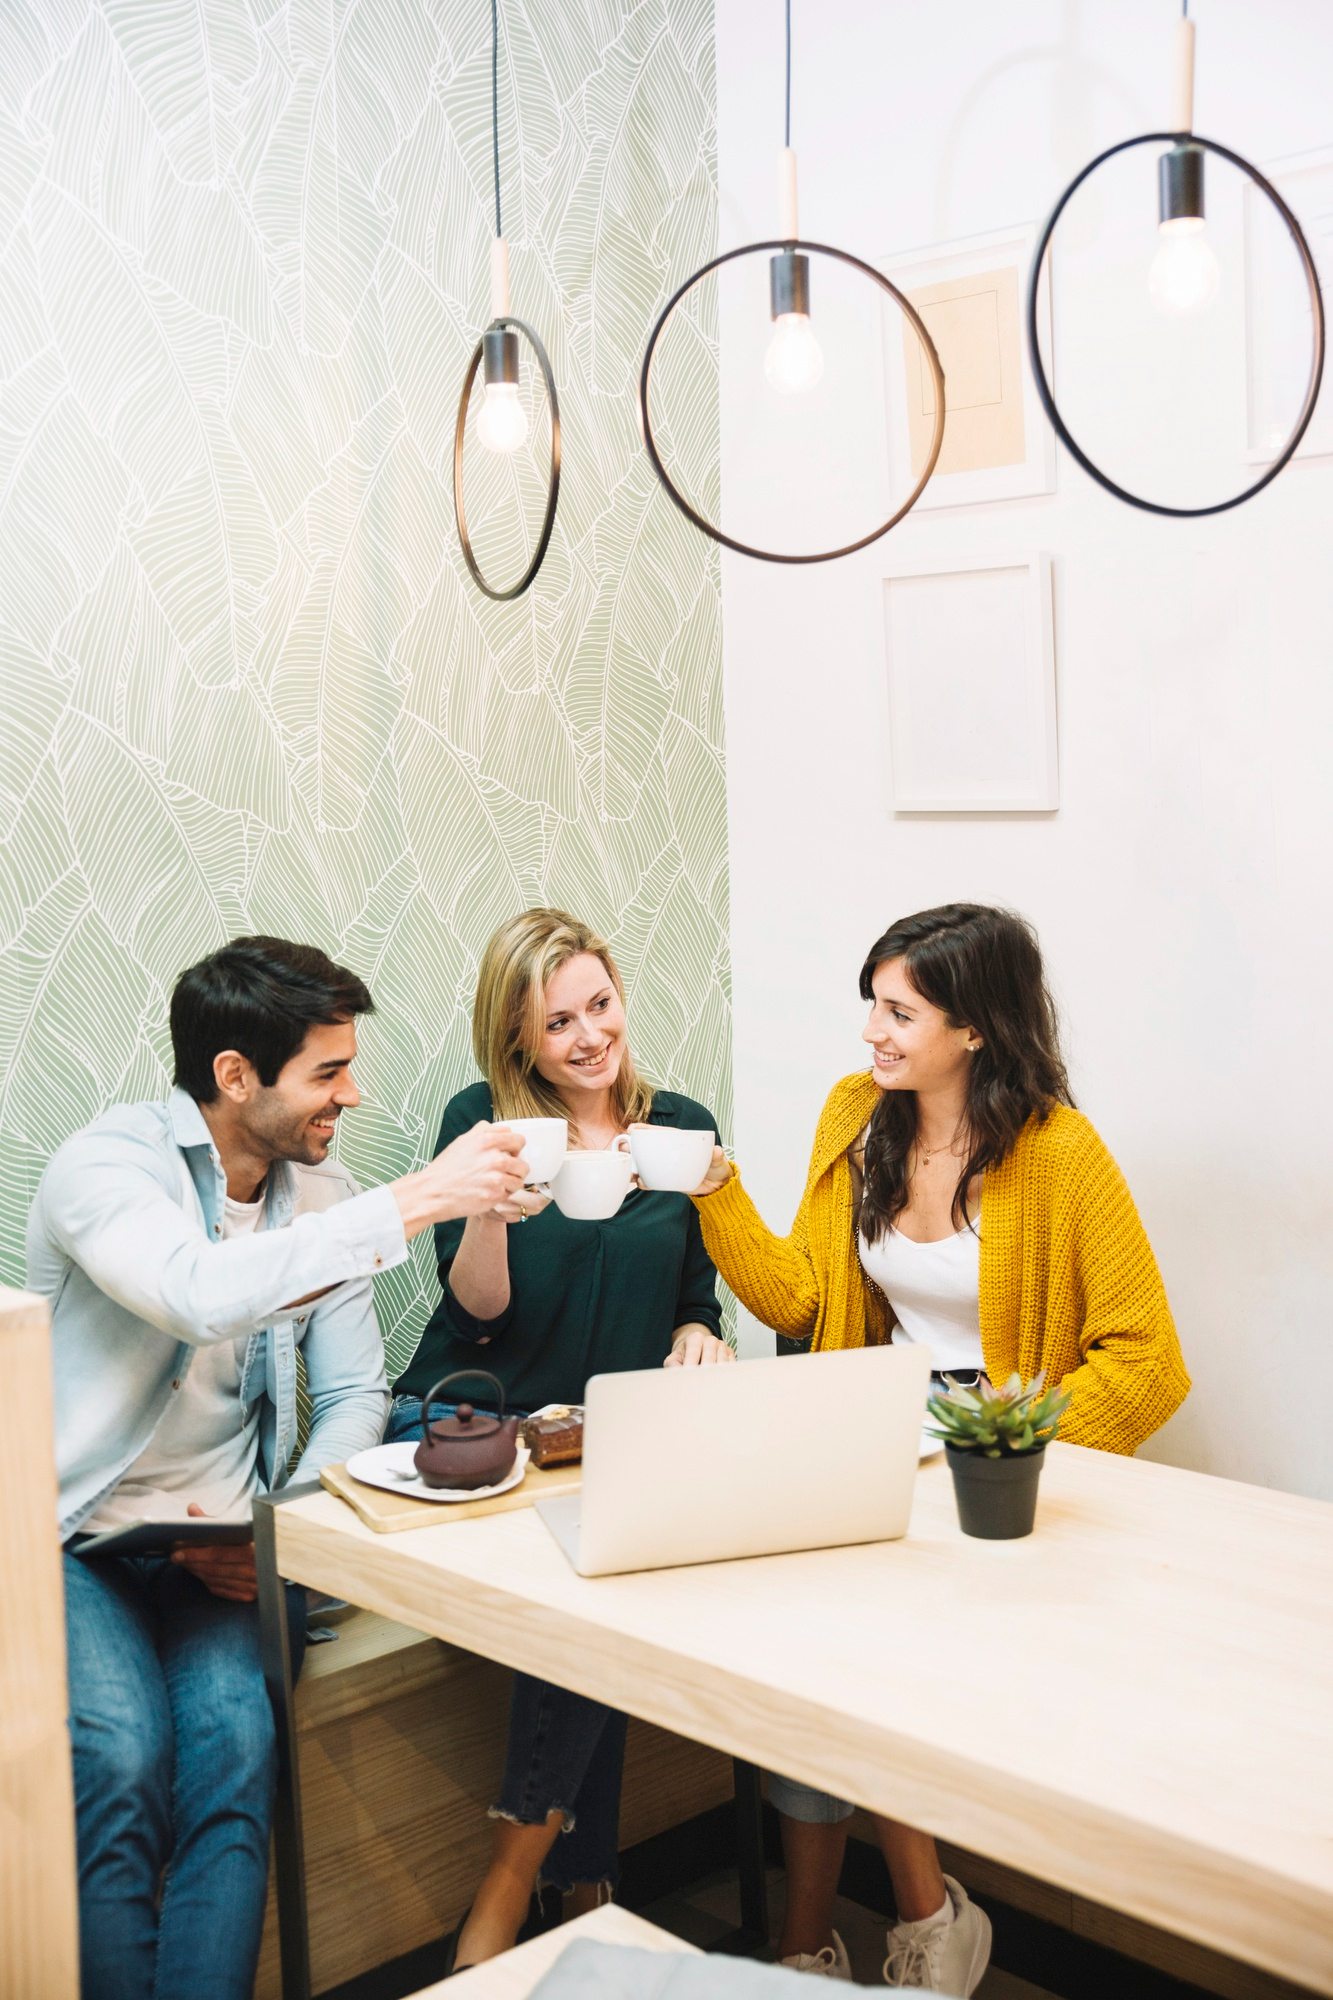 Trois personnes en train de boire un café pendant leur pause au travail